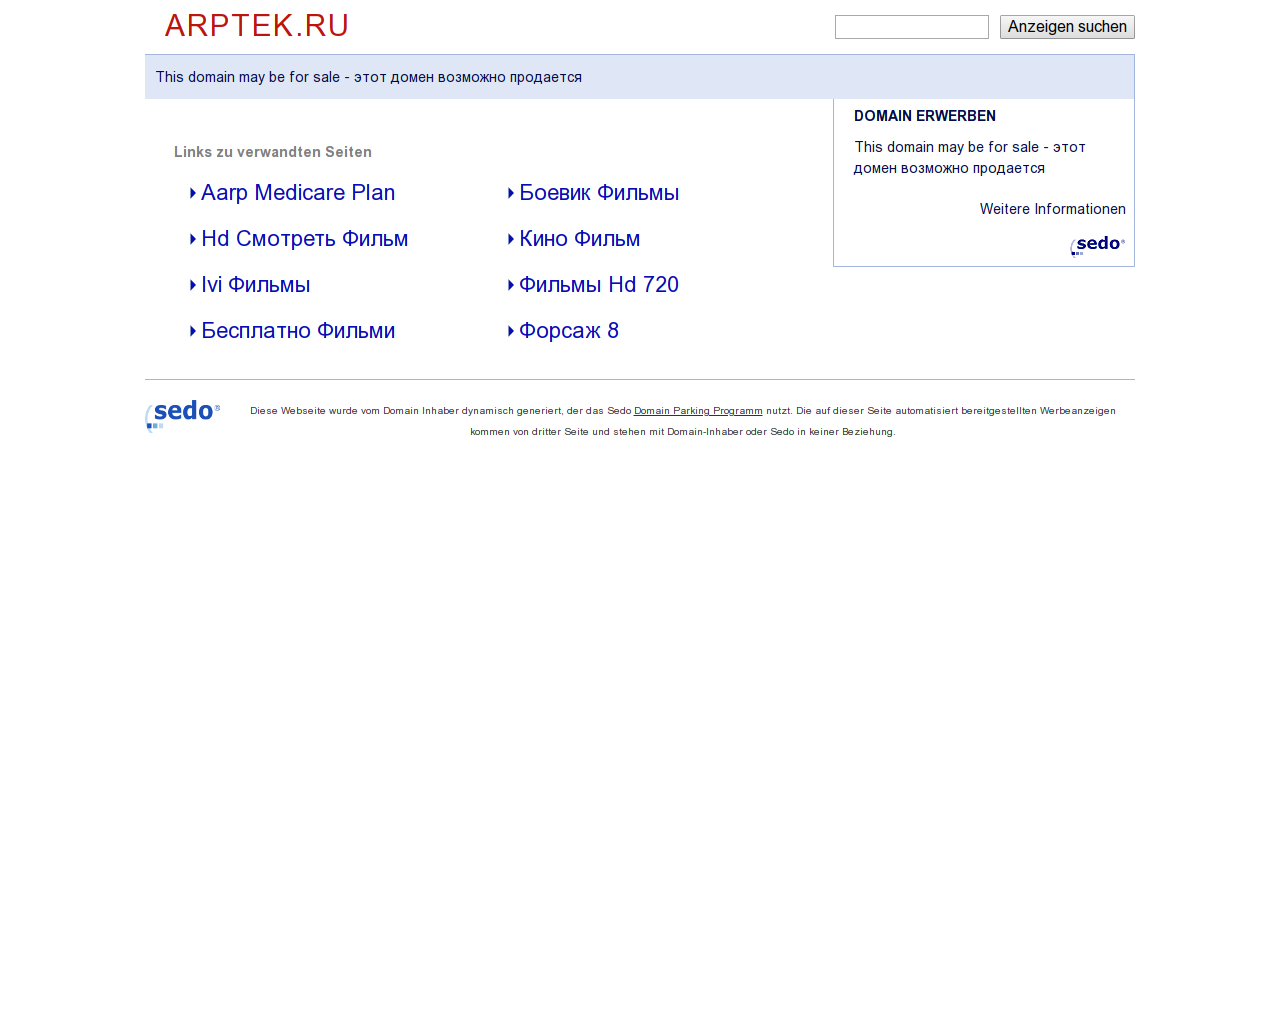 Изображение сайта arptek.ru в разрешении 1280x1024